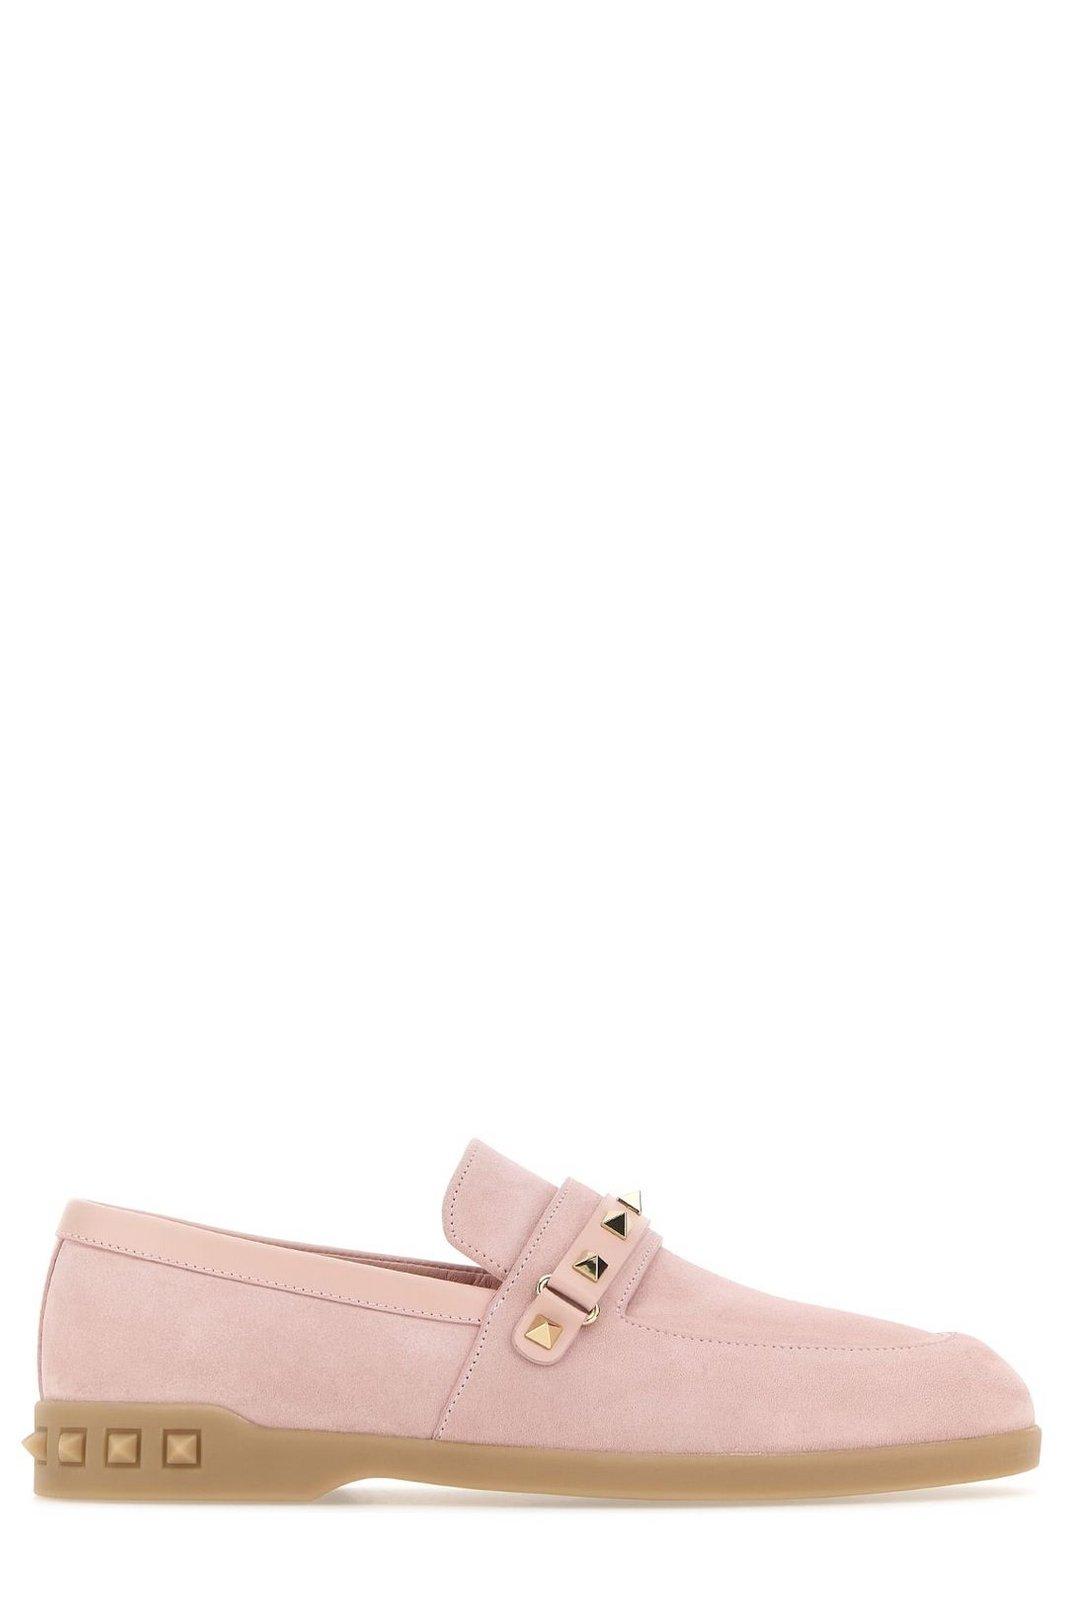 Shop Valentino Garavani Leisure Flows Slip-on Loafers In Pink